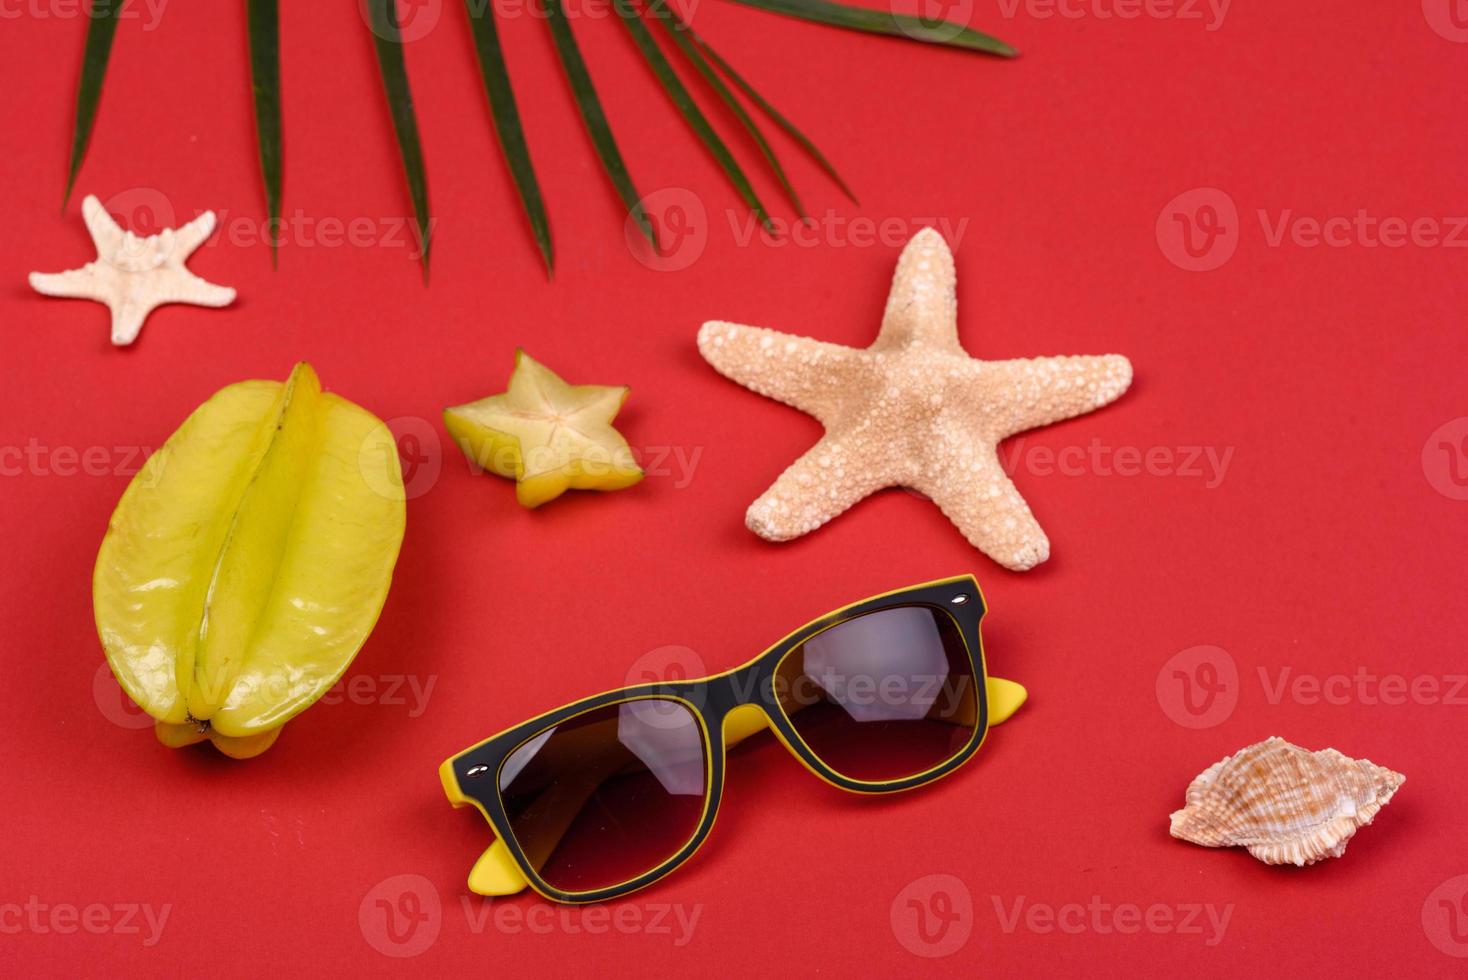 Carambol de frutas, accesorios de playa y follaje de una planta tropical sobre papel de colores foto